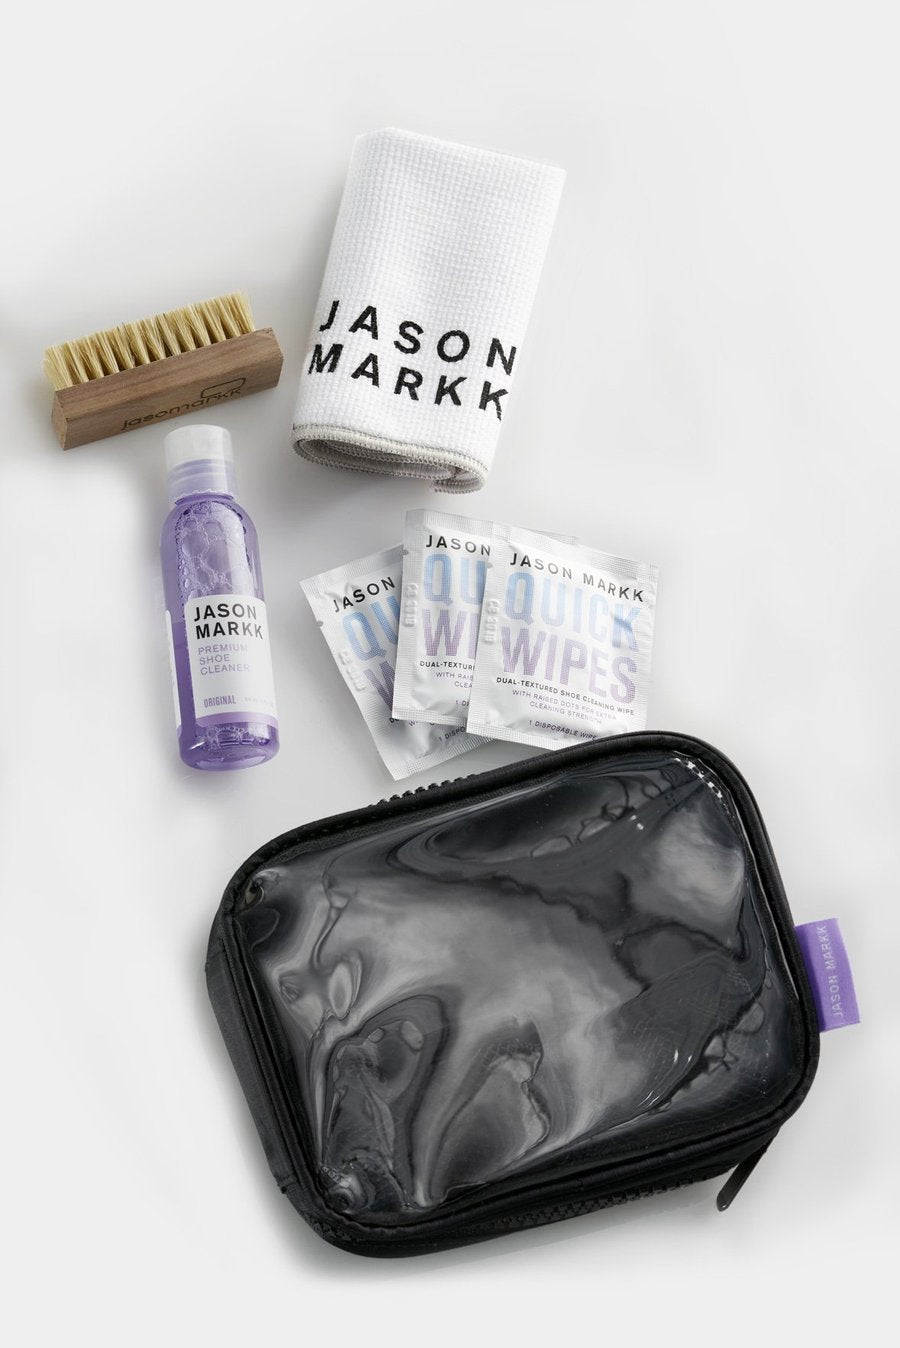 Jason Markk Shoe Cleaner Travel Kit